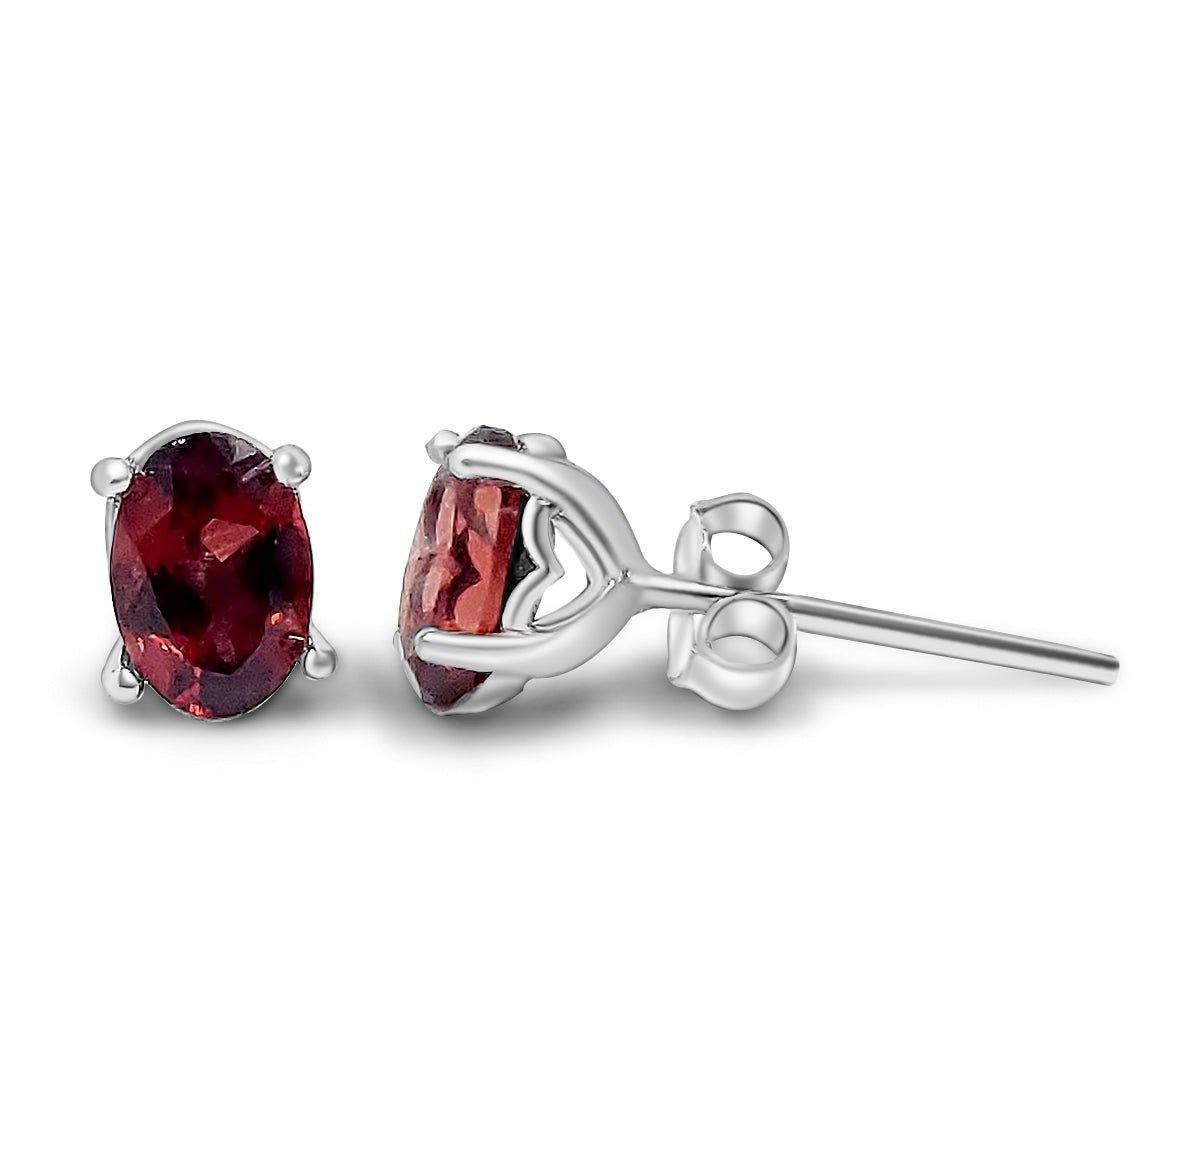 Authentic Oval Garnet Heart Earrings - Uniquelan Jewelry